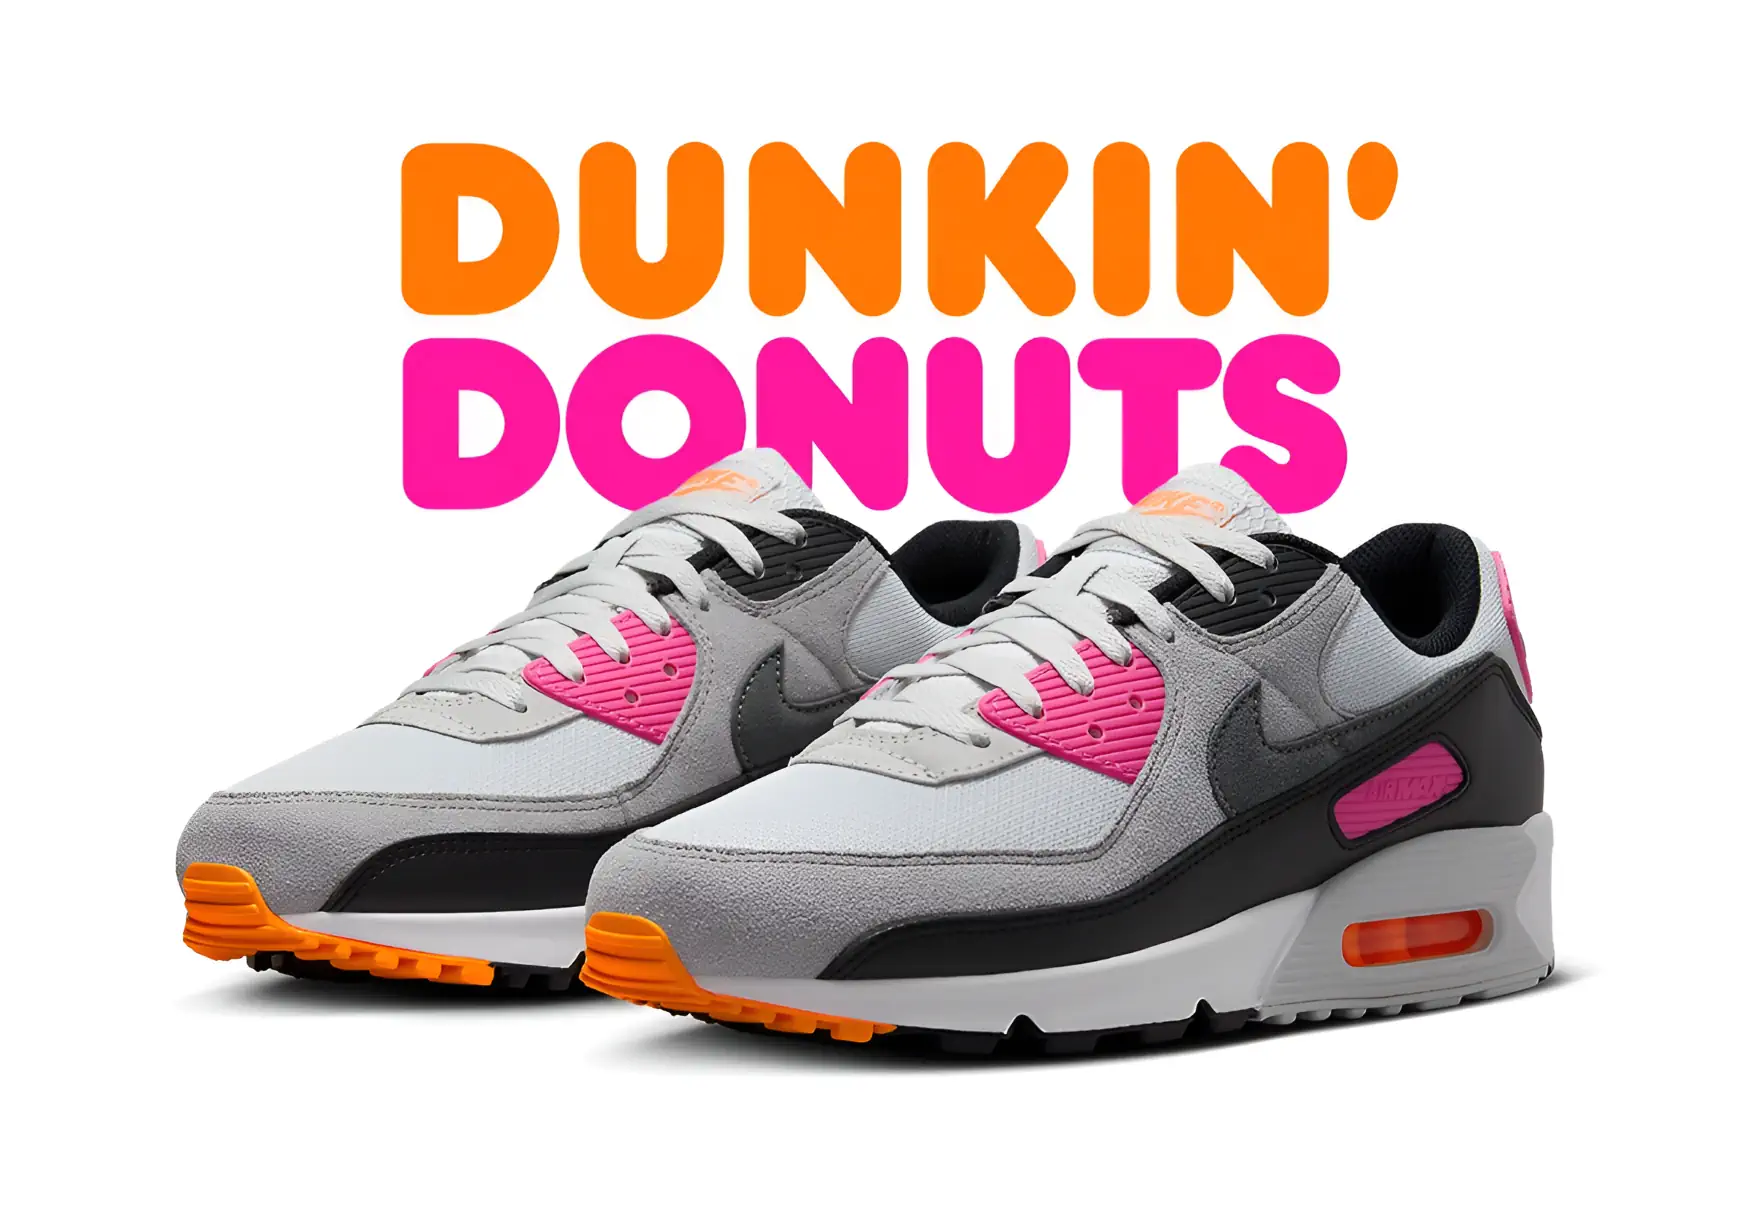 La Nike Air Max 90 s'offre une délicieuse métamorphose “Dunkin' Donuts”